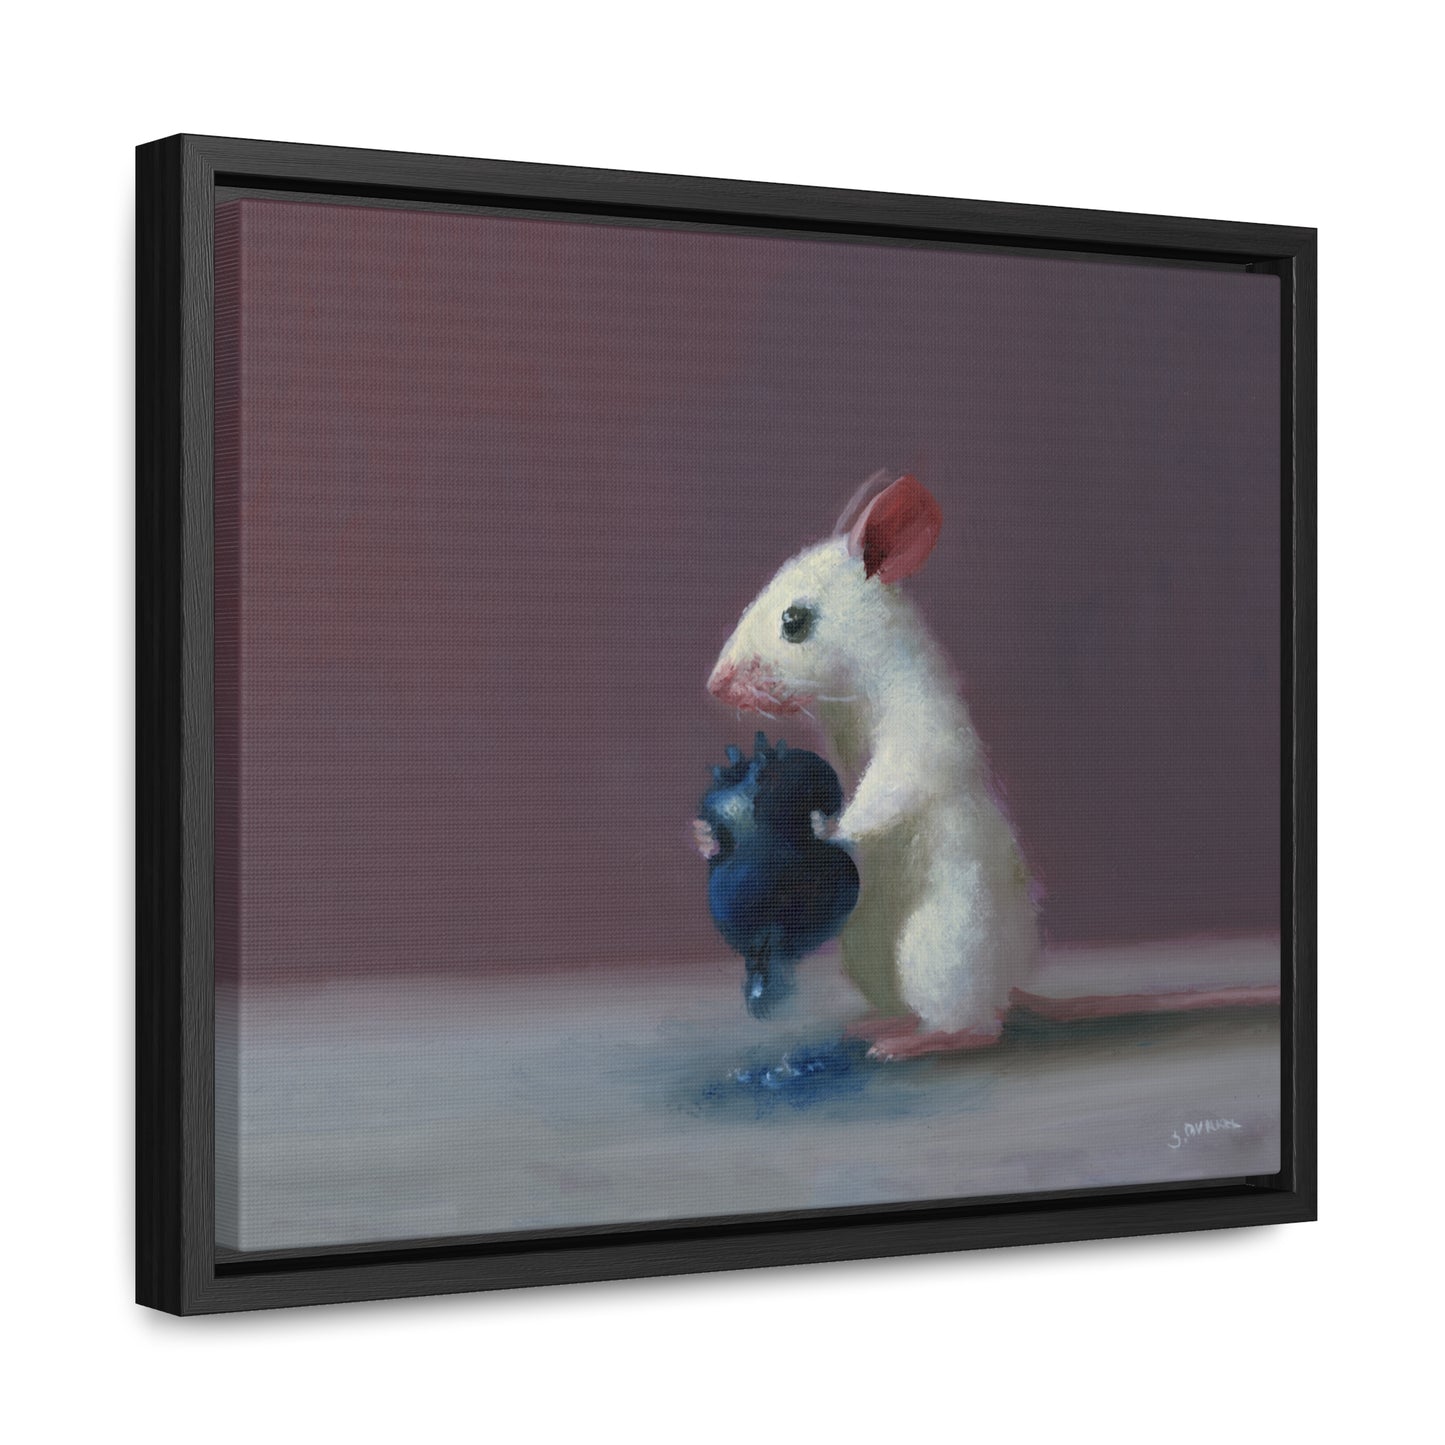 Stuart Dunkel: "Juicer" - Framed Canvas Reproduction